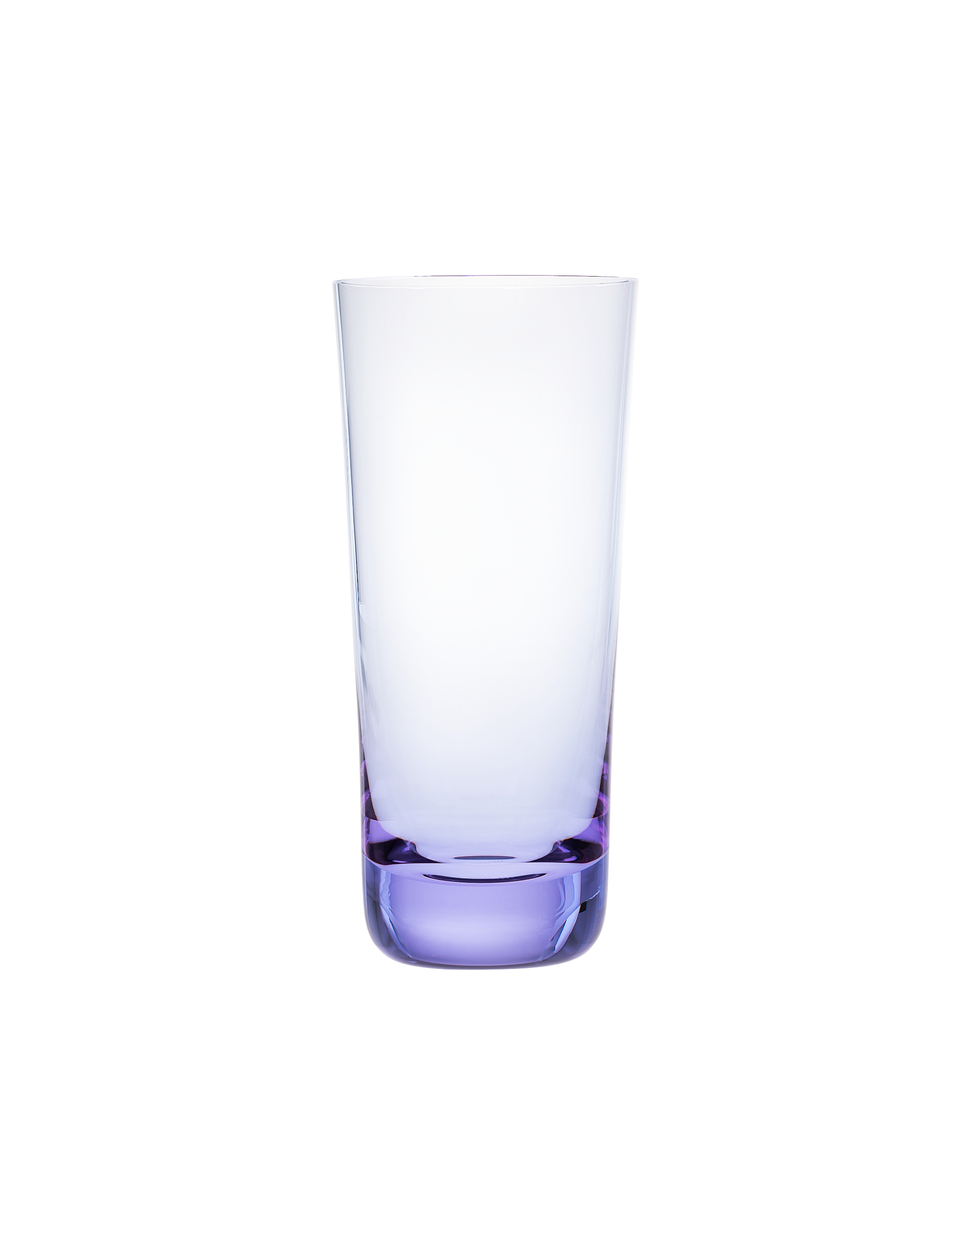 Conus sklenice, 400 ml